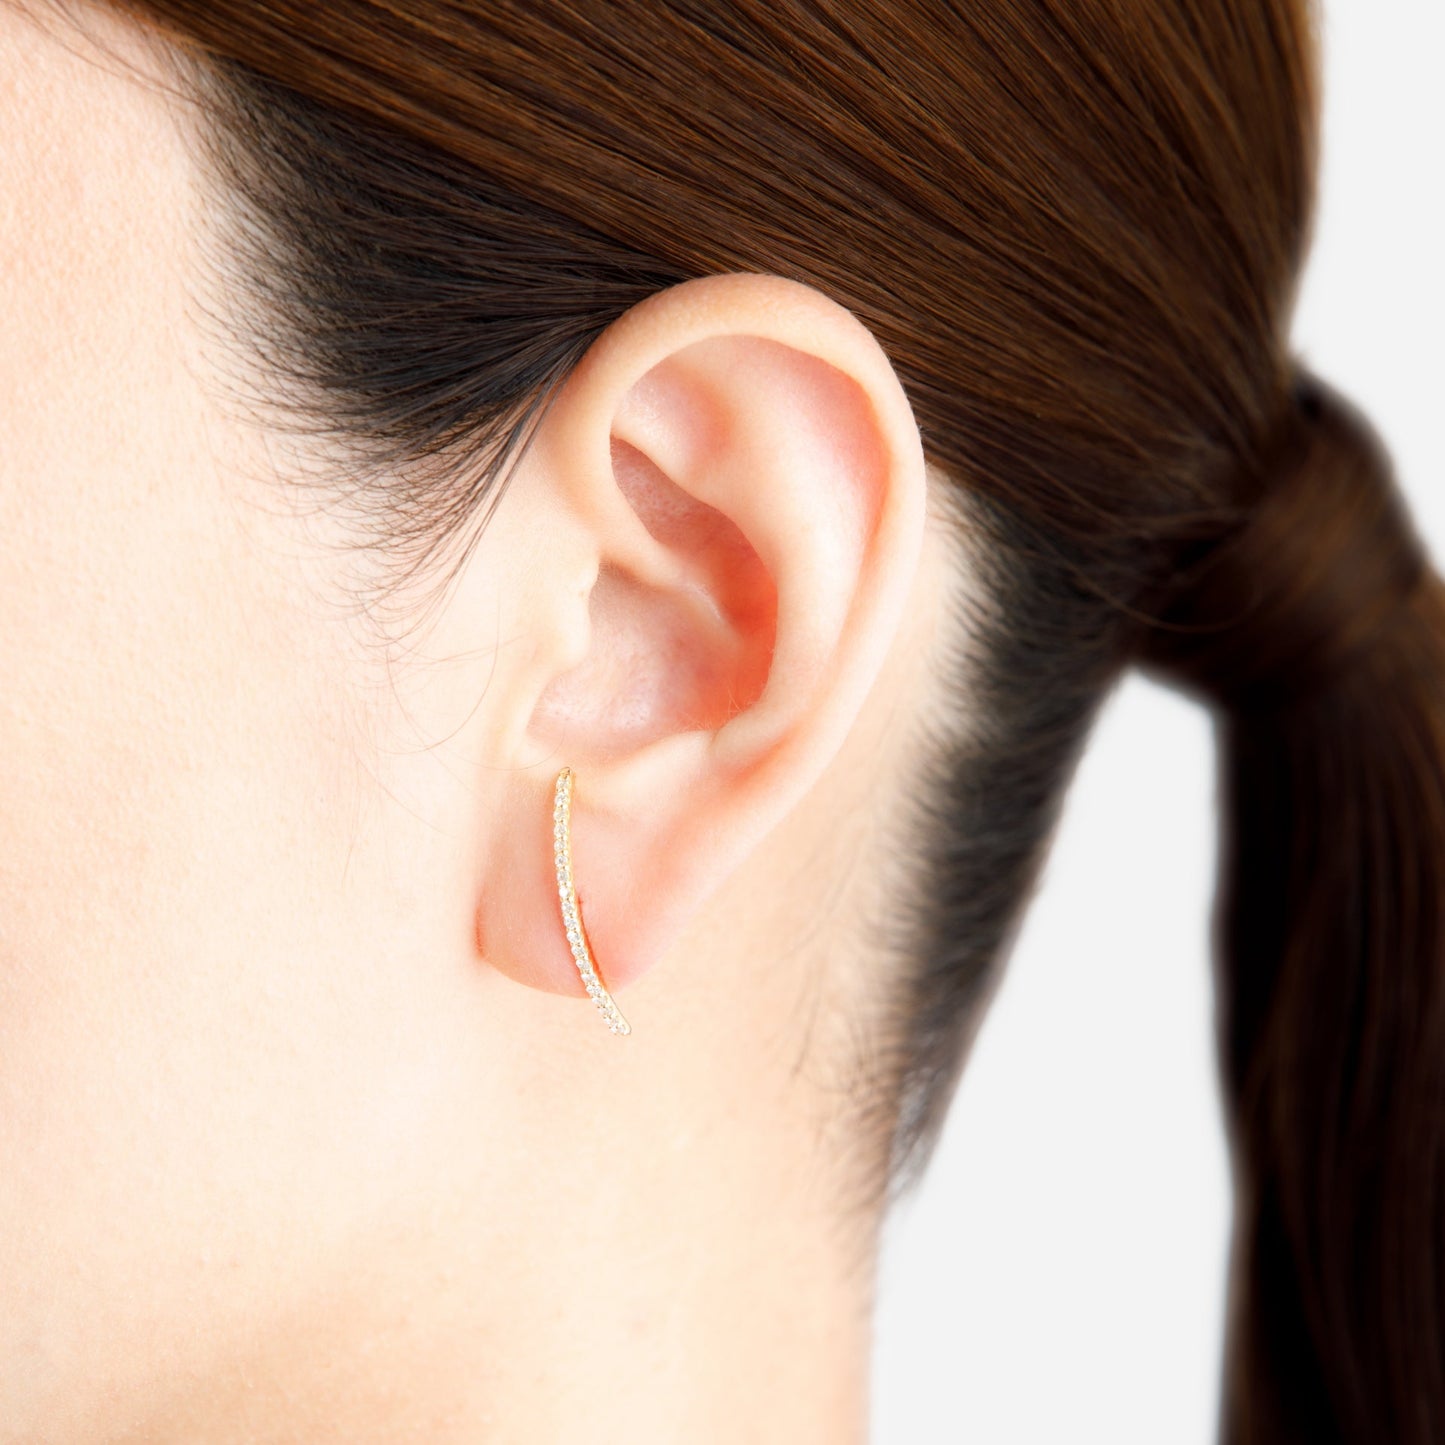 Linear Pireced earring "Smile medium"